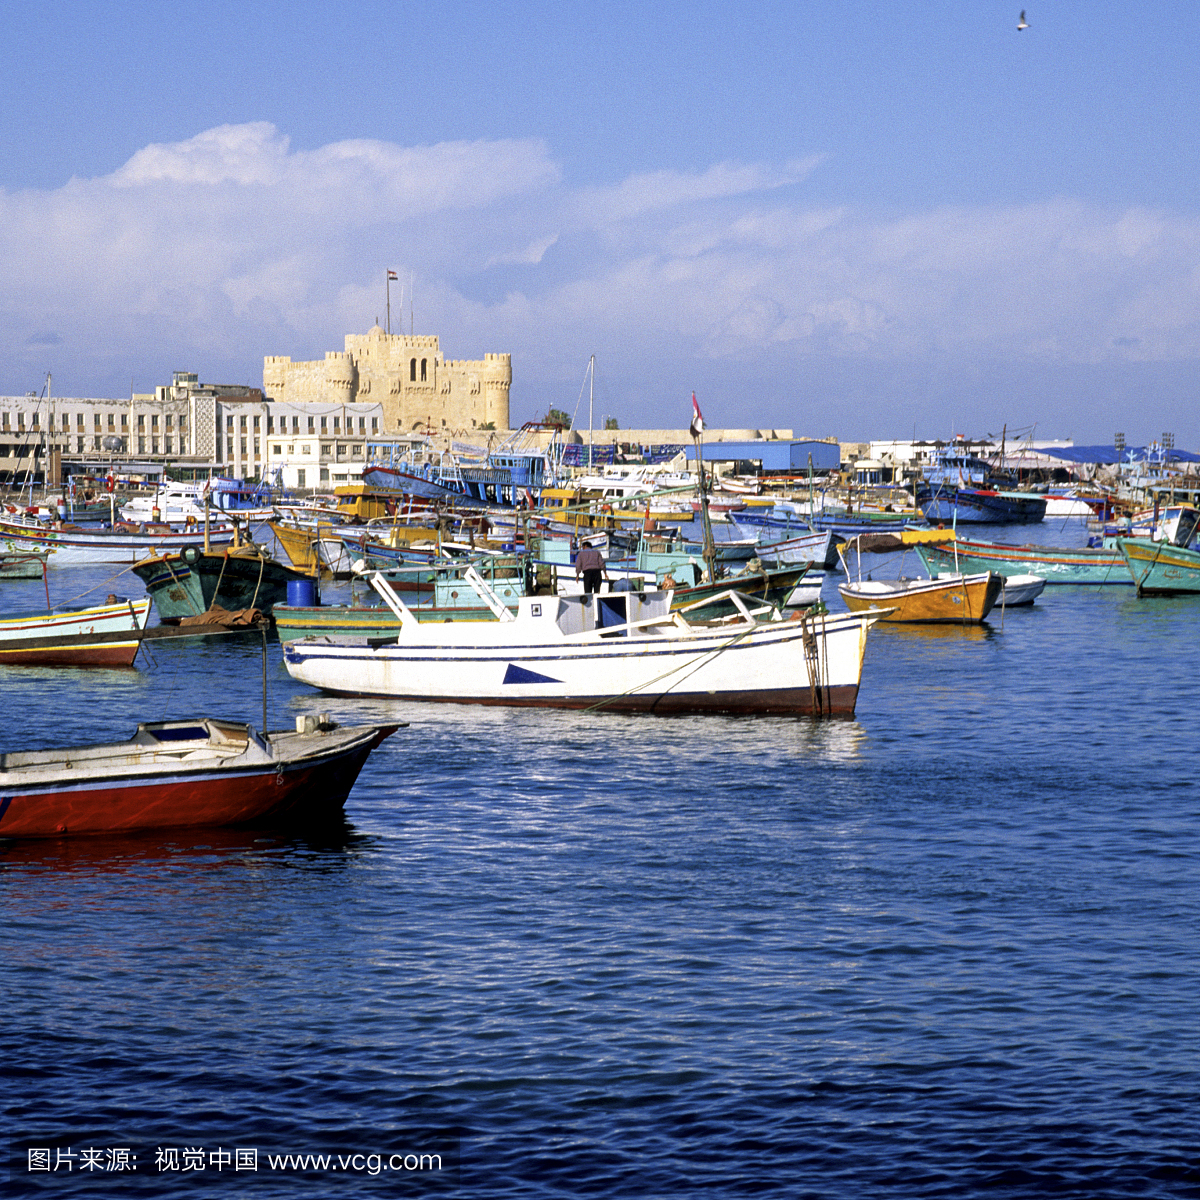 Qaitbay Castle and the Eastern Harbor, Alexandria